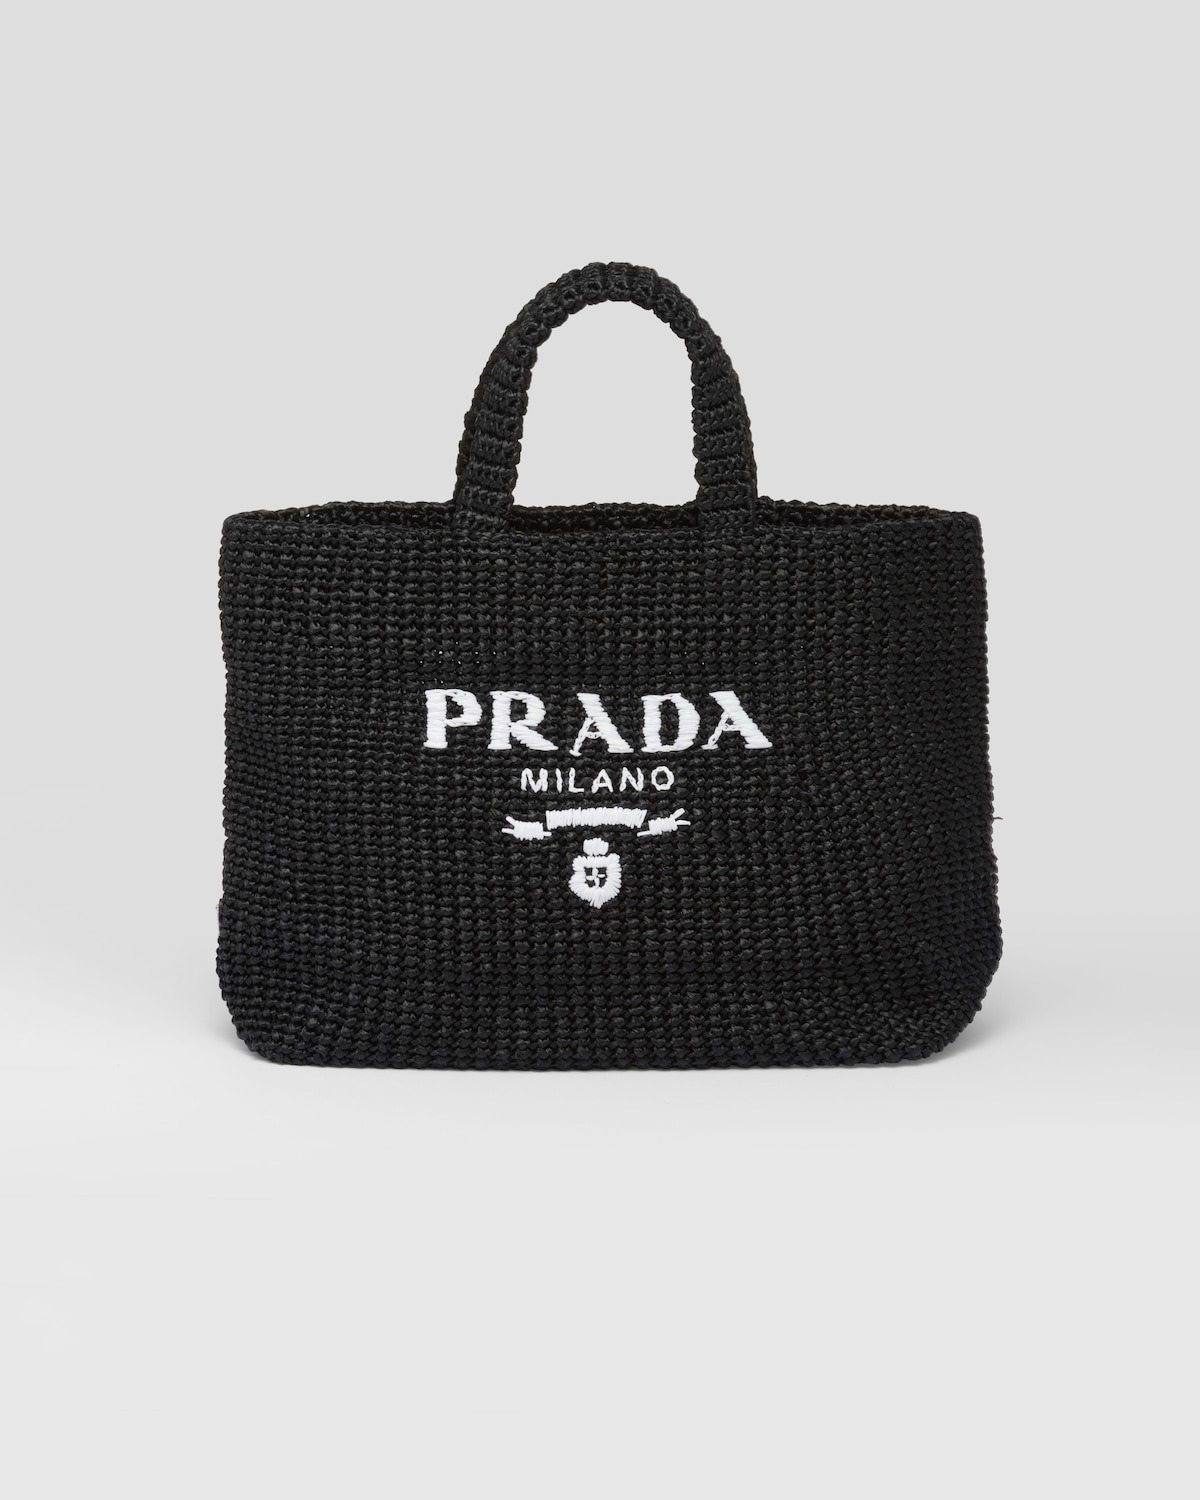 Gigi Hadid Swaps a Gym Bag for a Prada Bowler